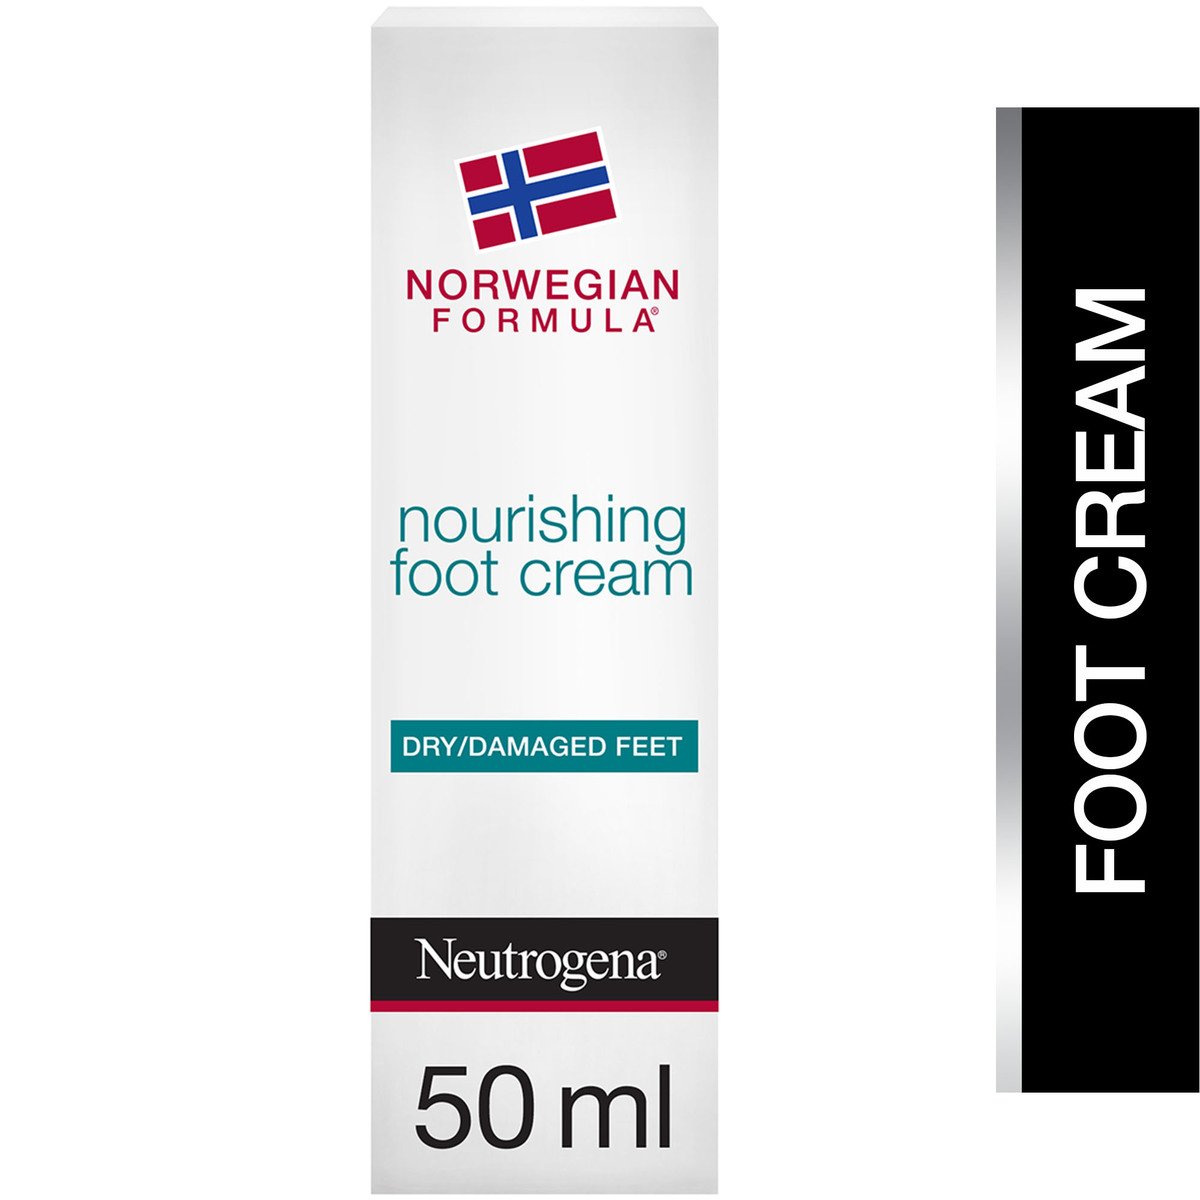 نيوتروجينا كريم للقدم بتركيبة نرويجية مغذي للأقدام الجافة والمتضررة 50 مل